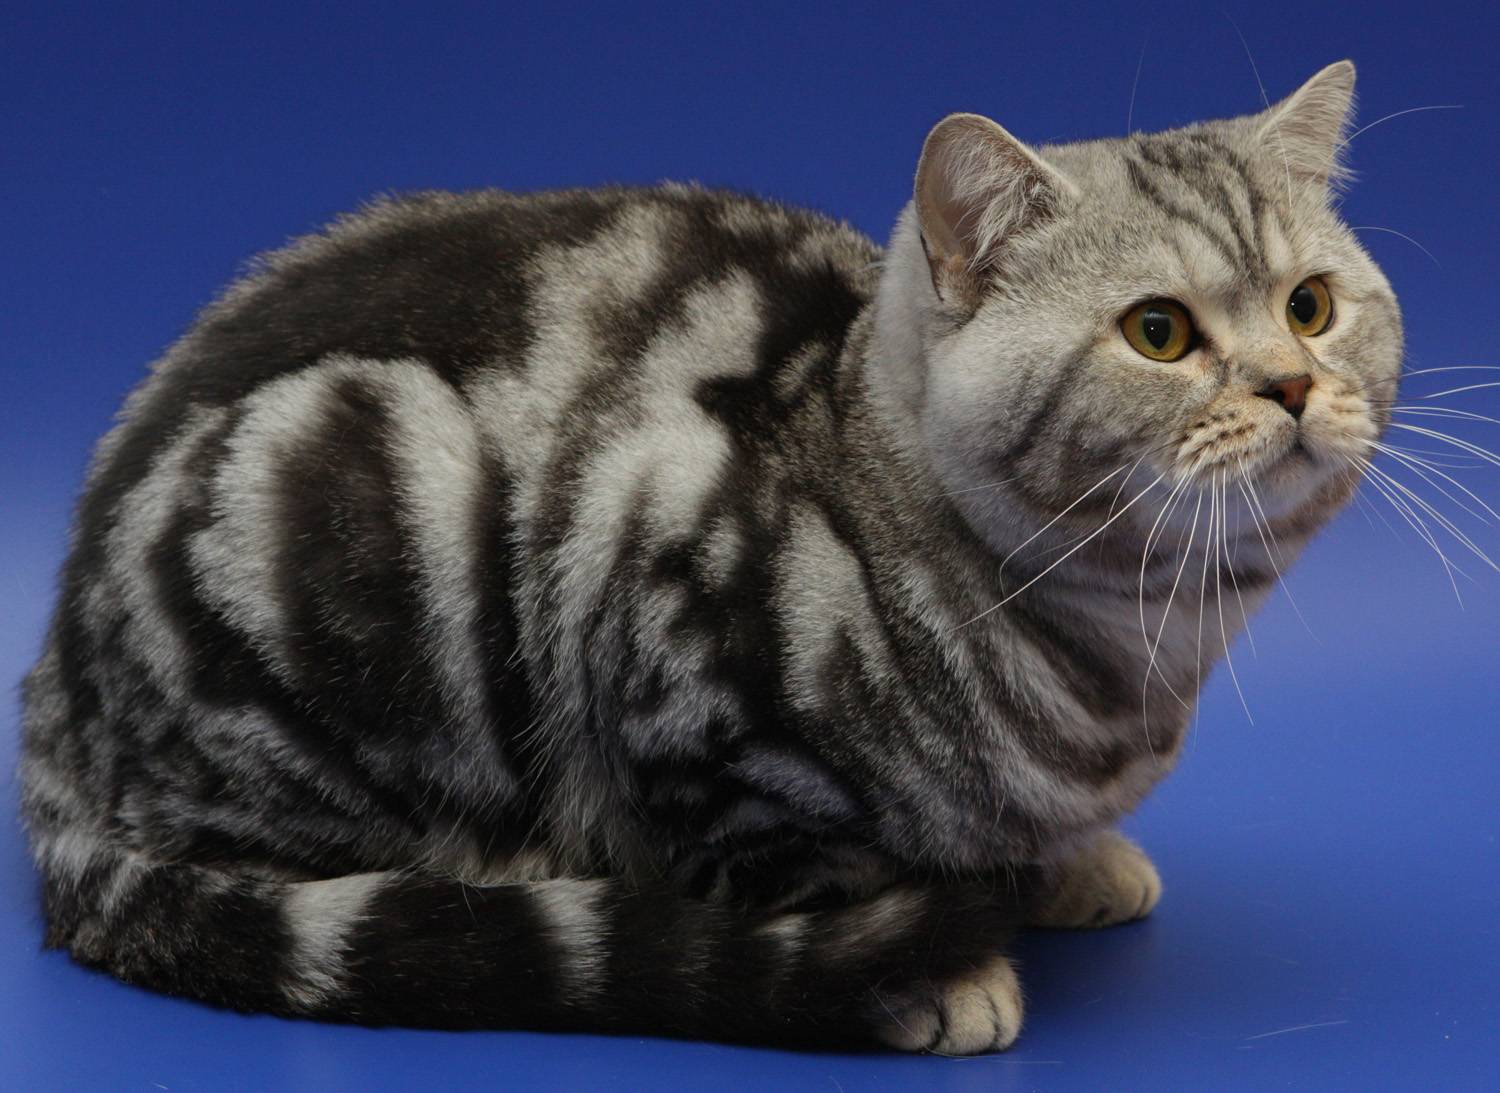 Как называется порода кошек из рекламы корма «вискас»?